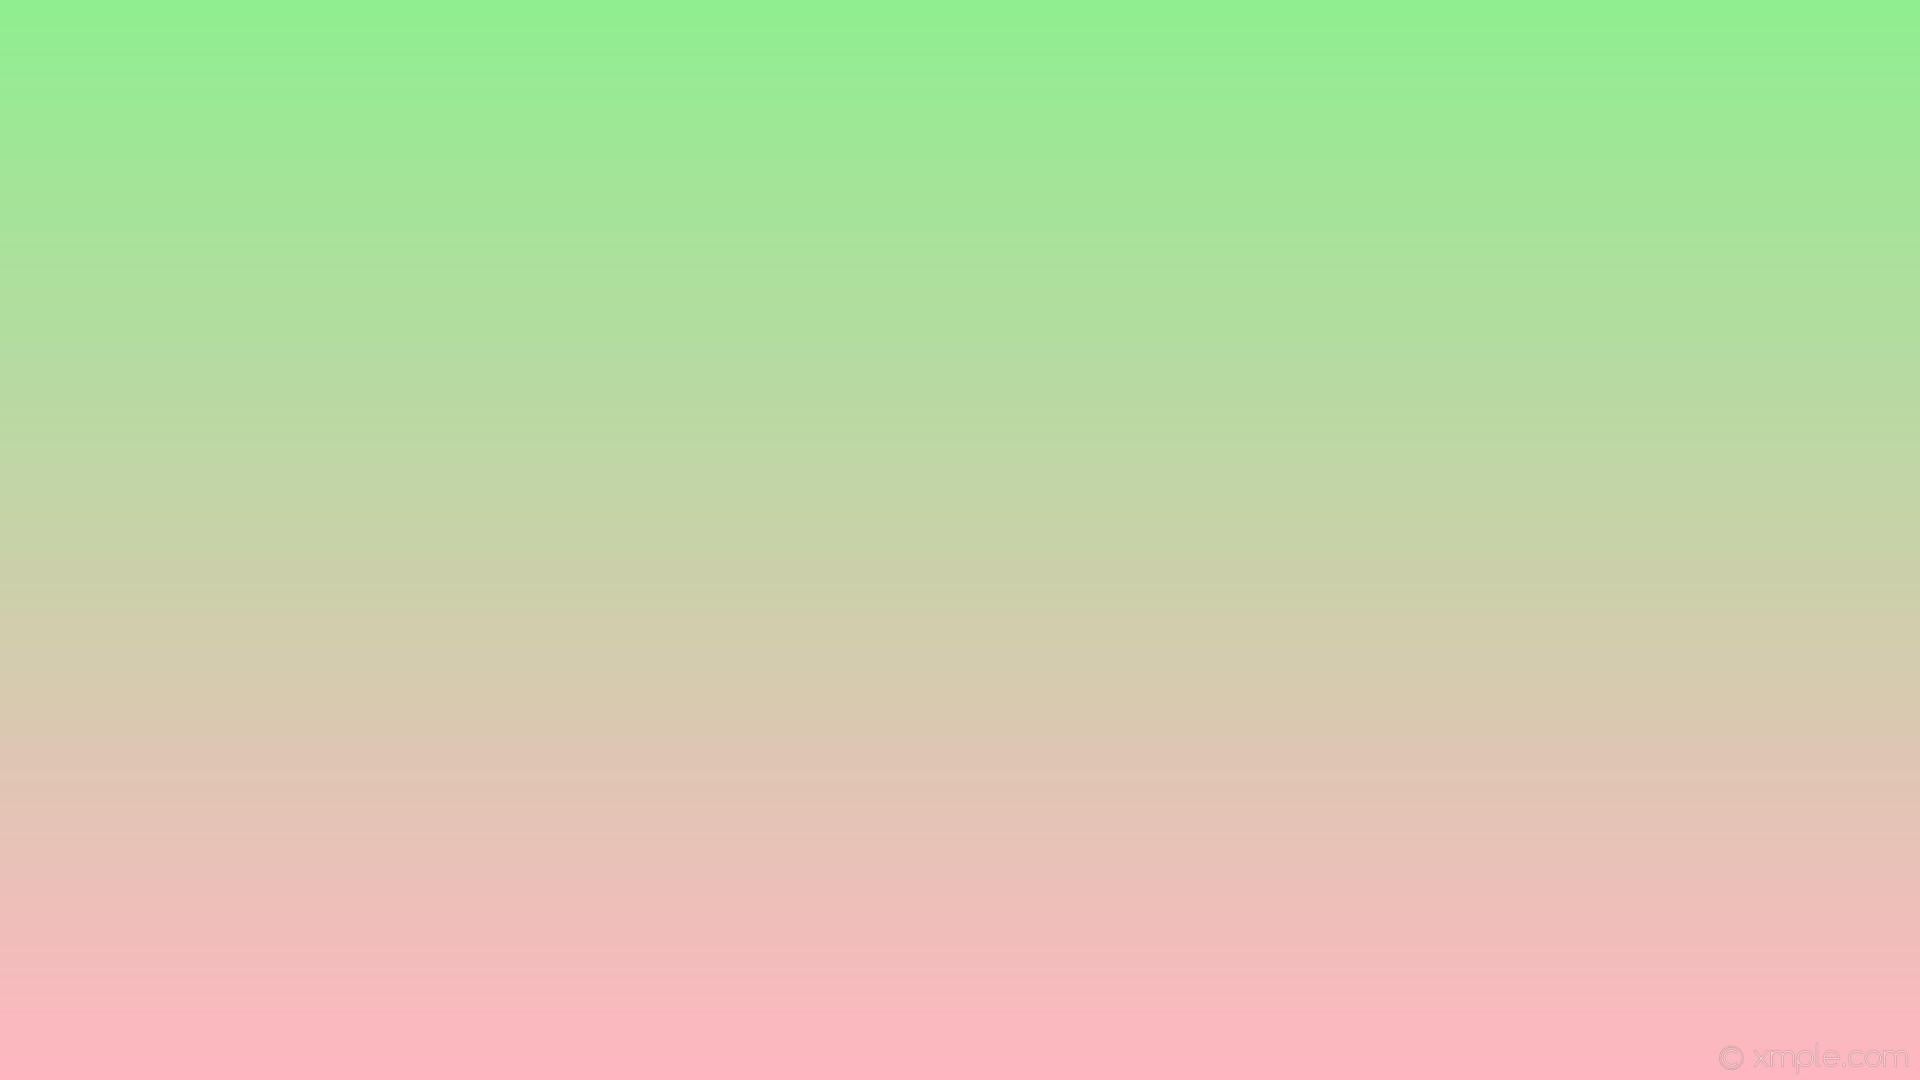 1920x1080 wallpaper green pink gradient linear light pink light green #ffb6c1 #90ee90  270Â°